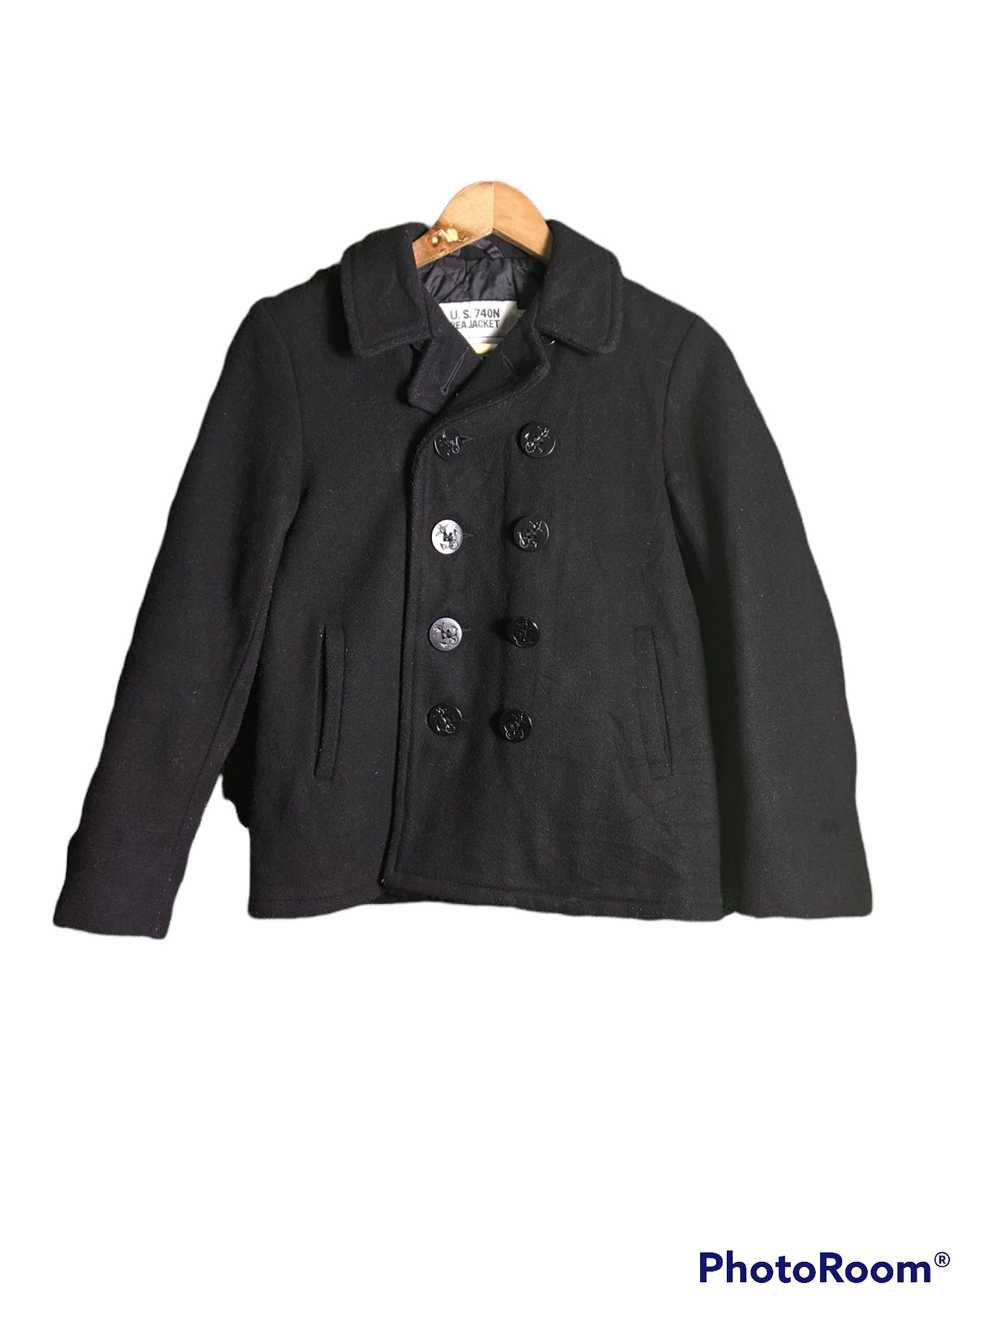 Rare × Schott schott u.s 740N pea WOMEN jacket - image 1